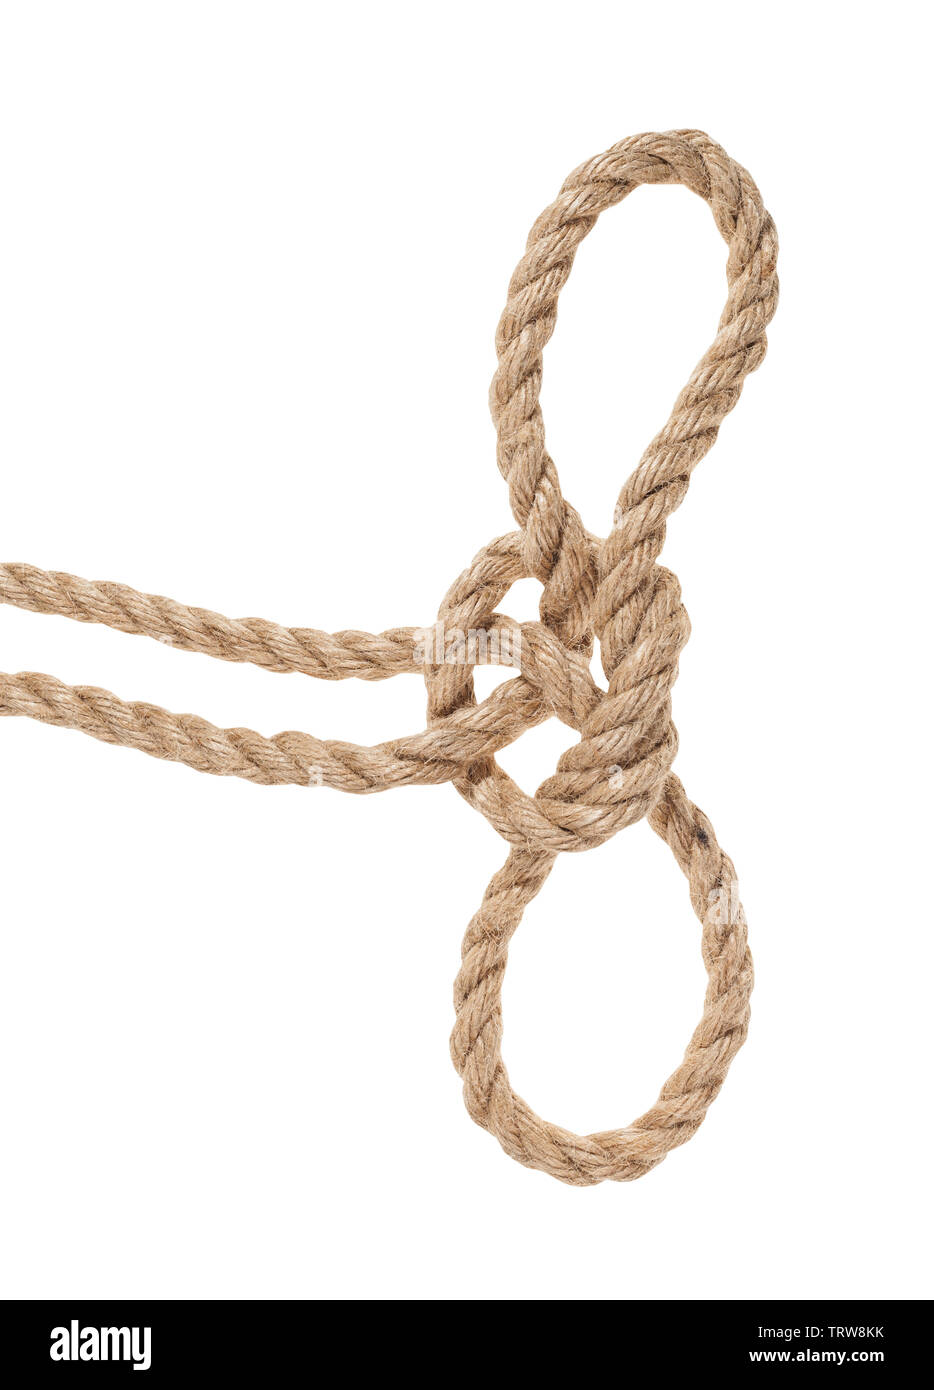 Handcuff nœud sur la corde de jute épaisse isolé sur fond blanc Banque D'Images